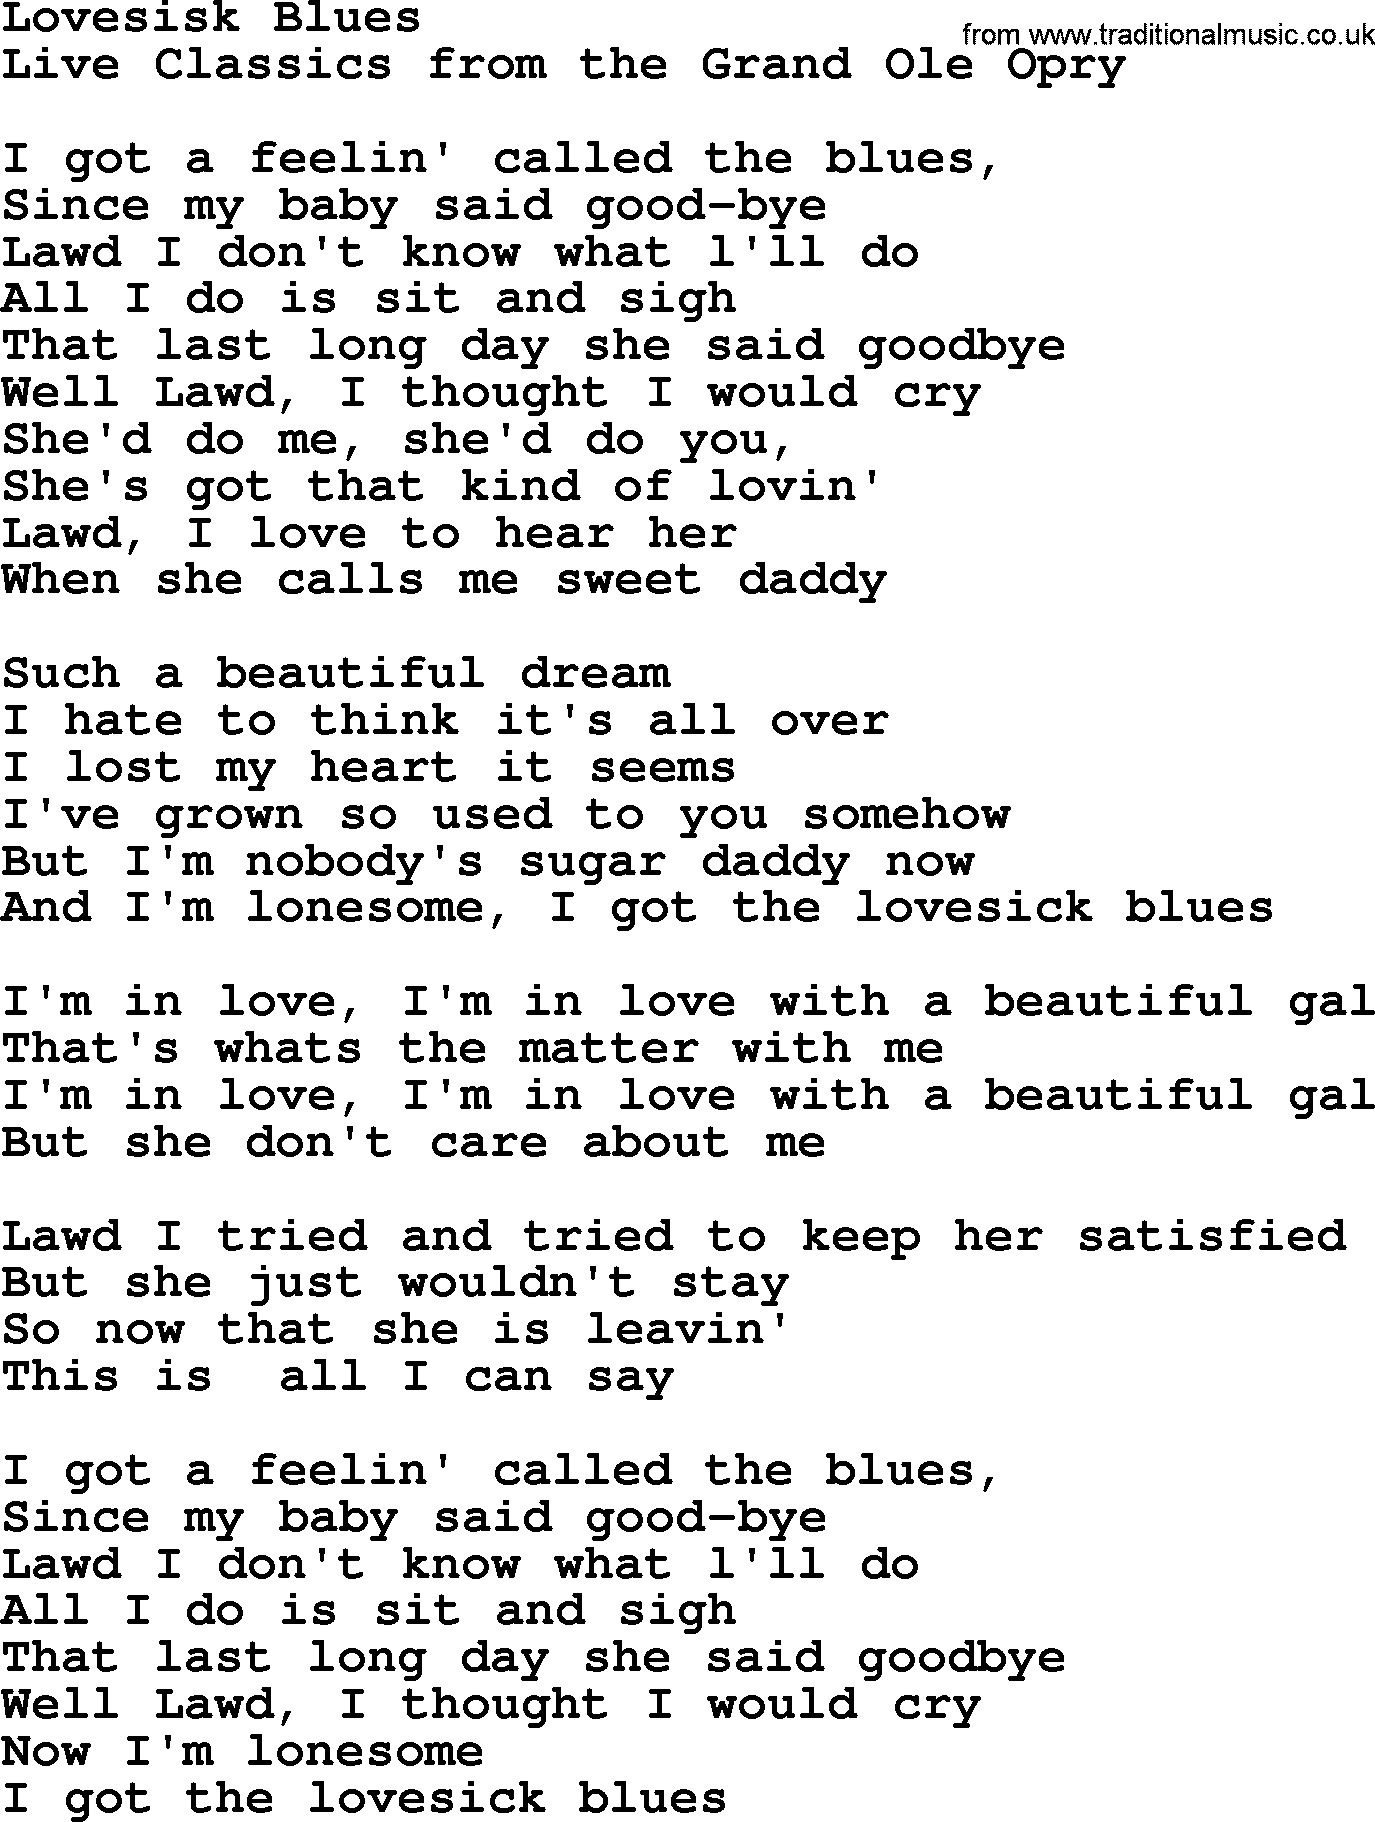 Marty Robbins song: Lovesick Blues, lyrics